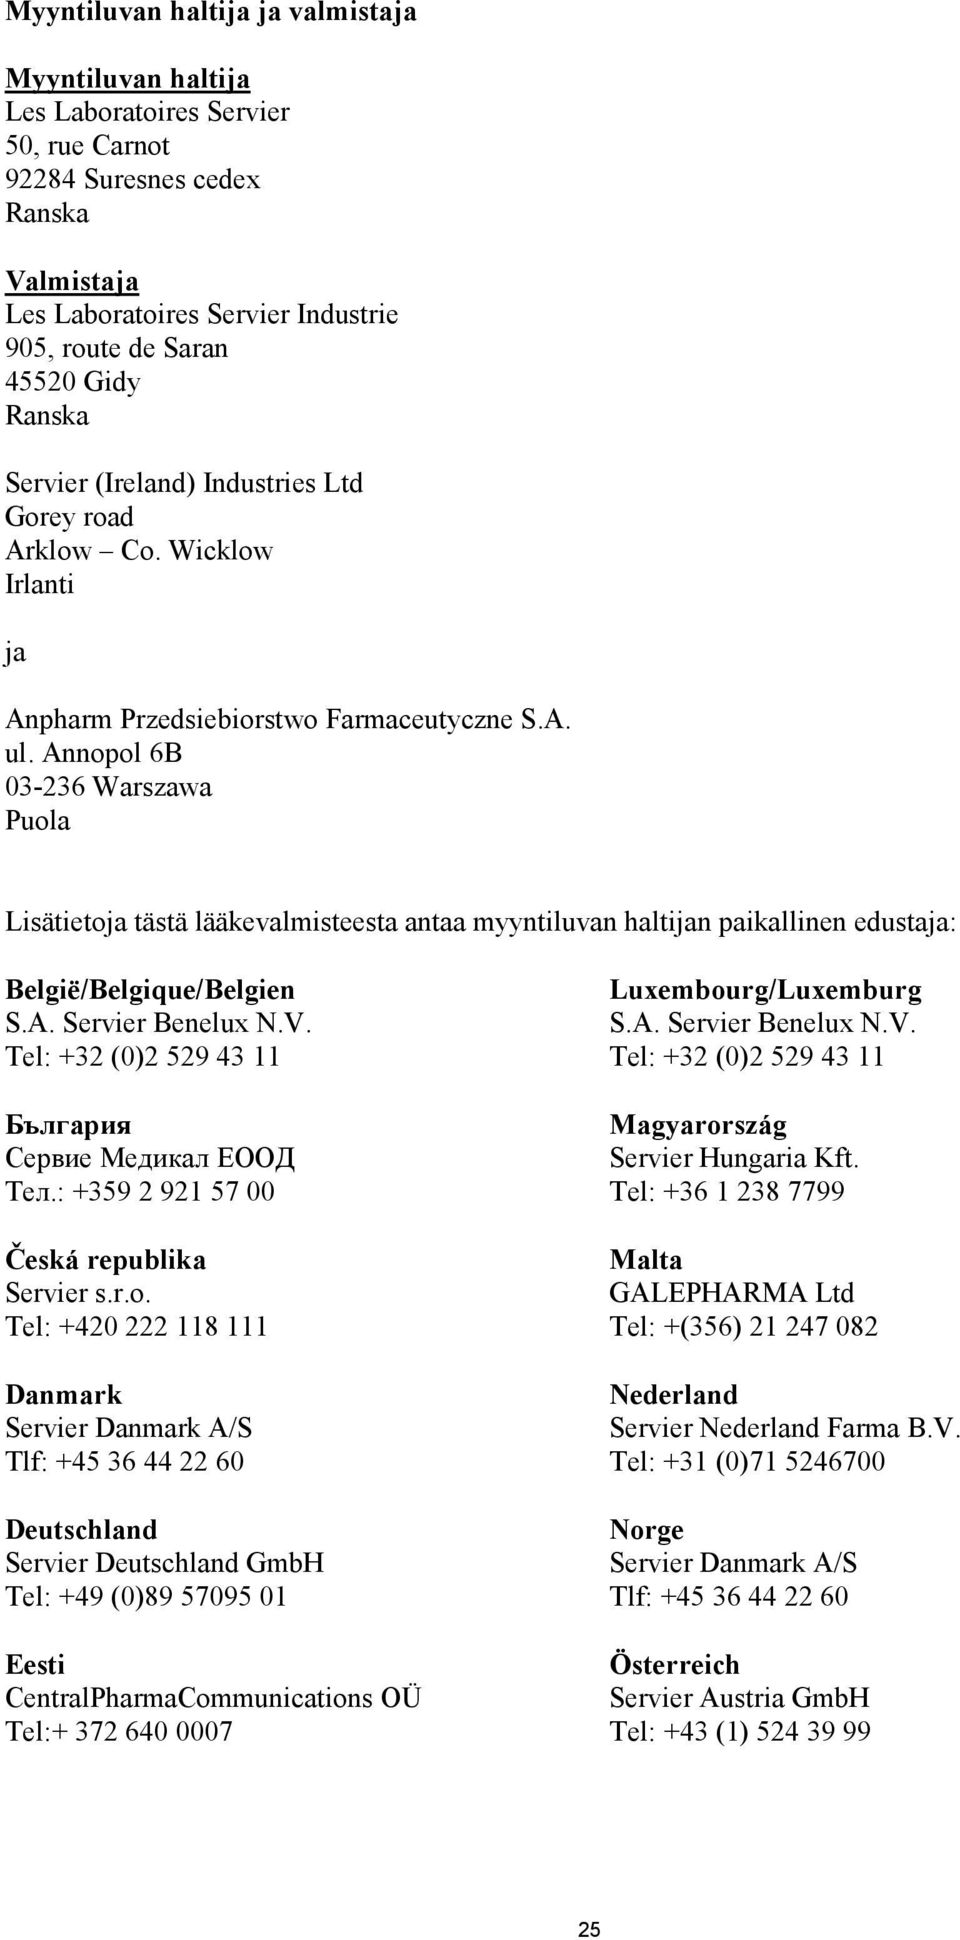 Annopol 6B 03-236 Warszawa Puola Lisätietoja tästä lääkevalmisteesta antaa myyntiluvan haltijan paikallinen edustaja: België/Belgique/Belgien S.A. Servier Benelux N.V.